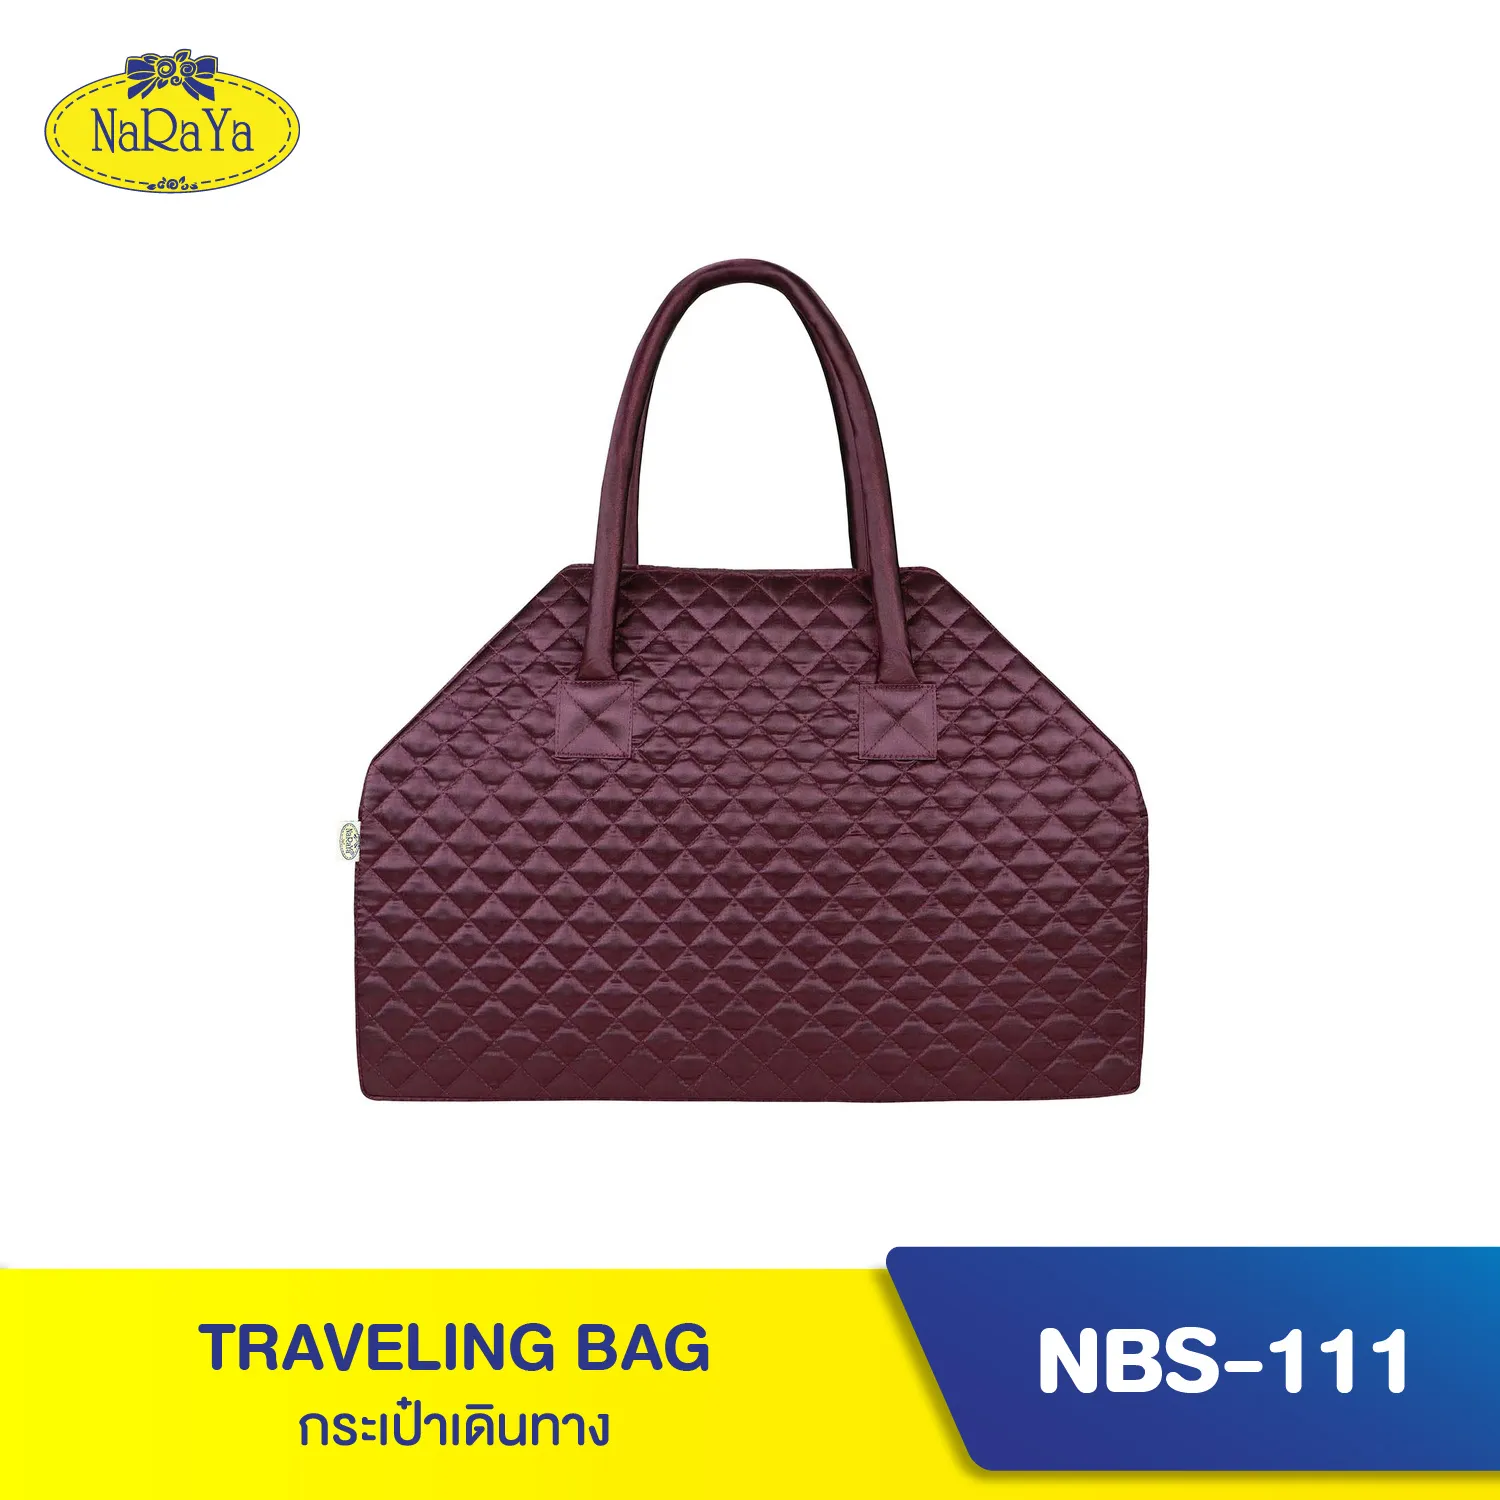 NaRaYa Traveling Bag กระเป๋าเดินทาง NBS-111 NO.102